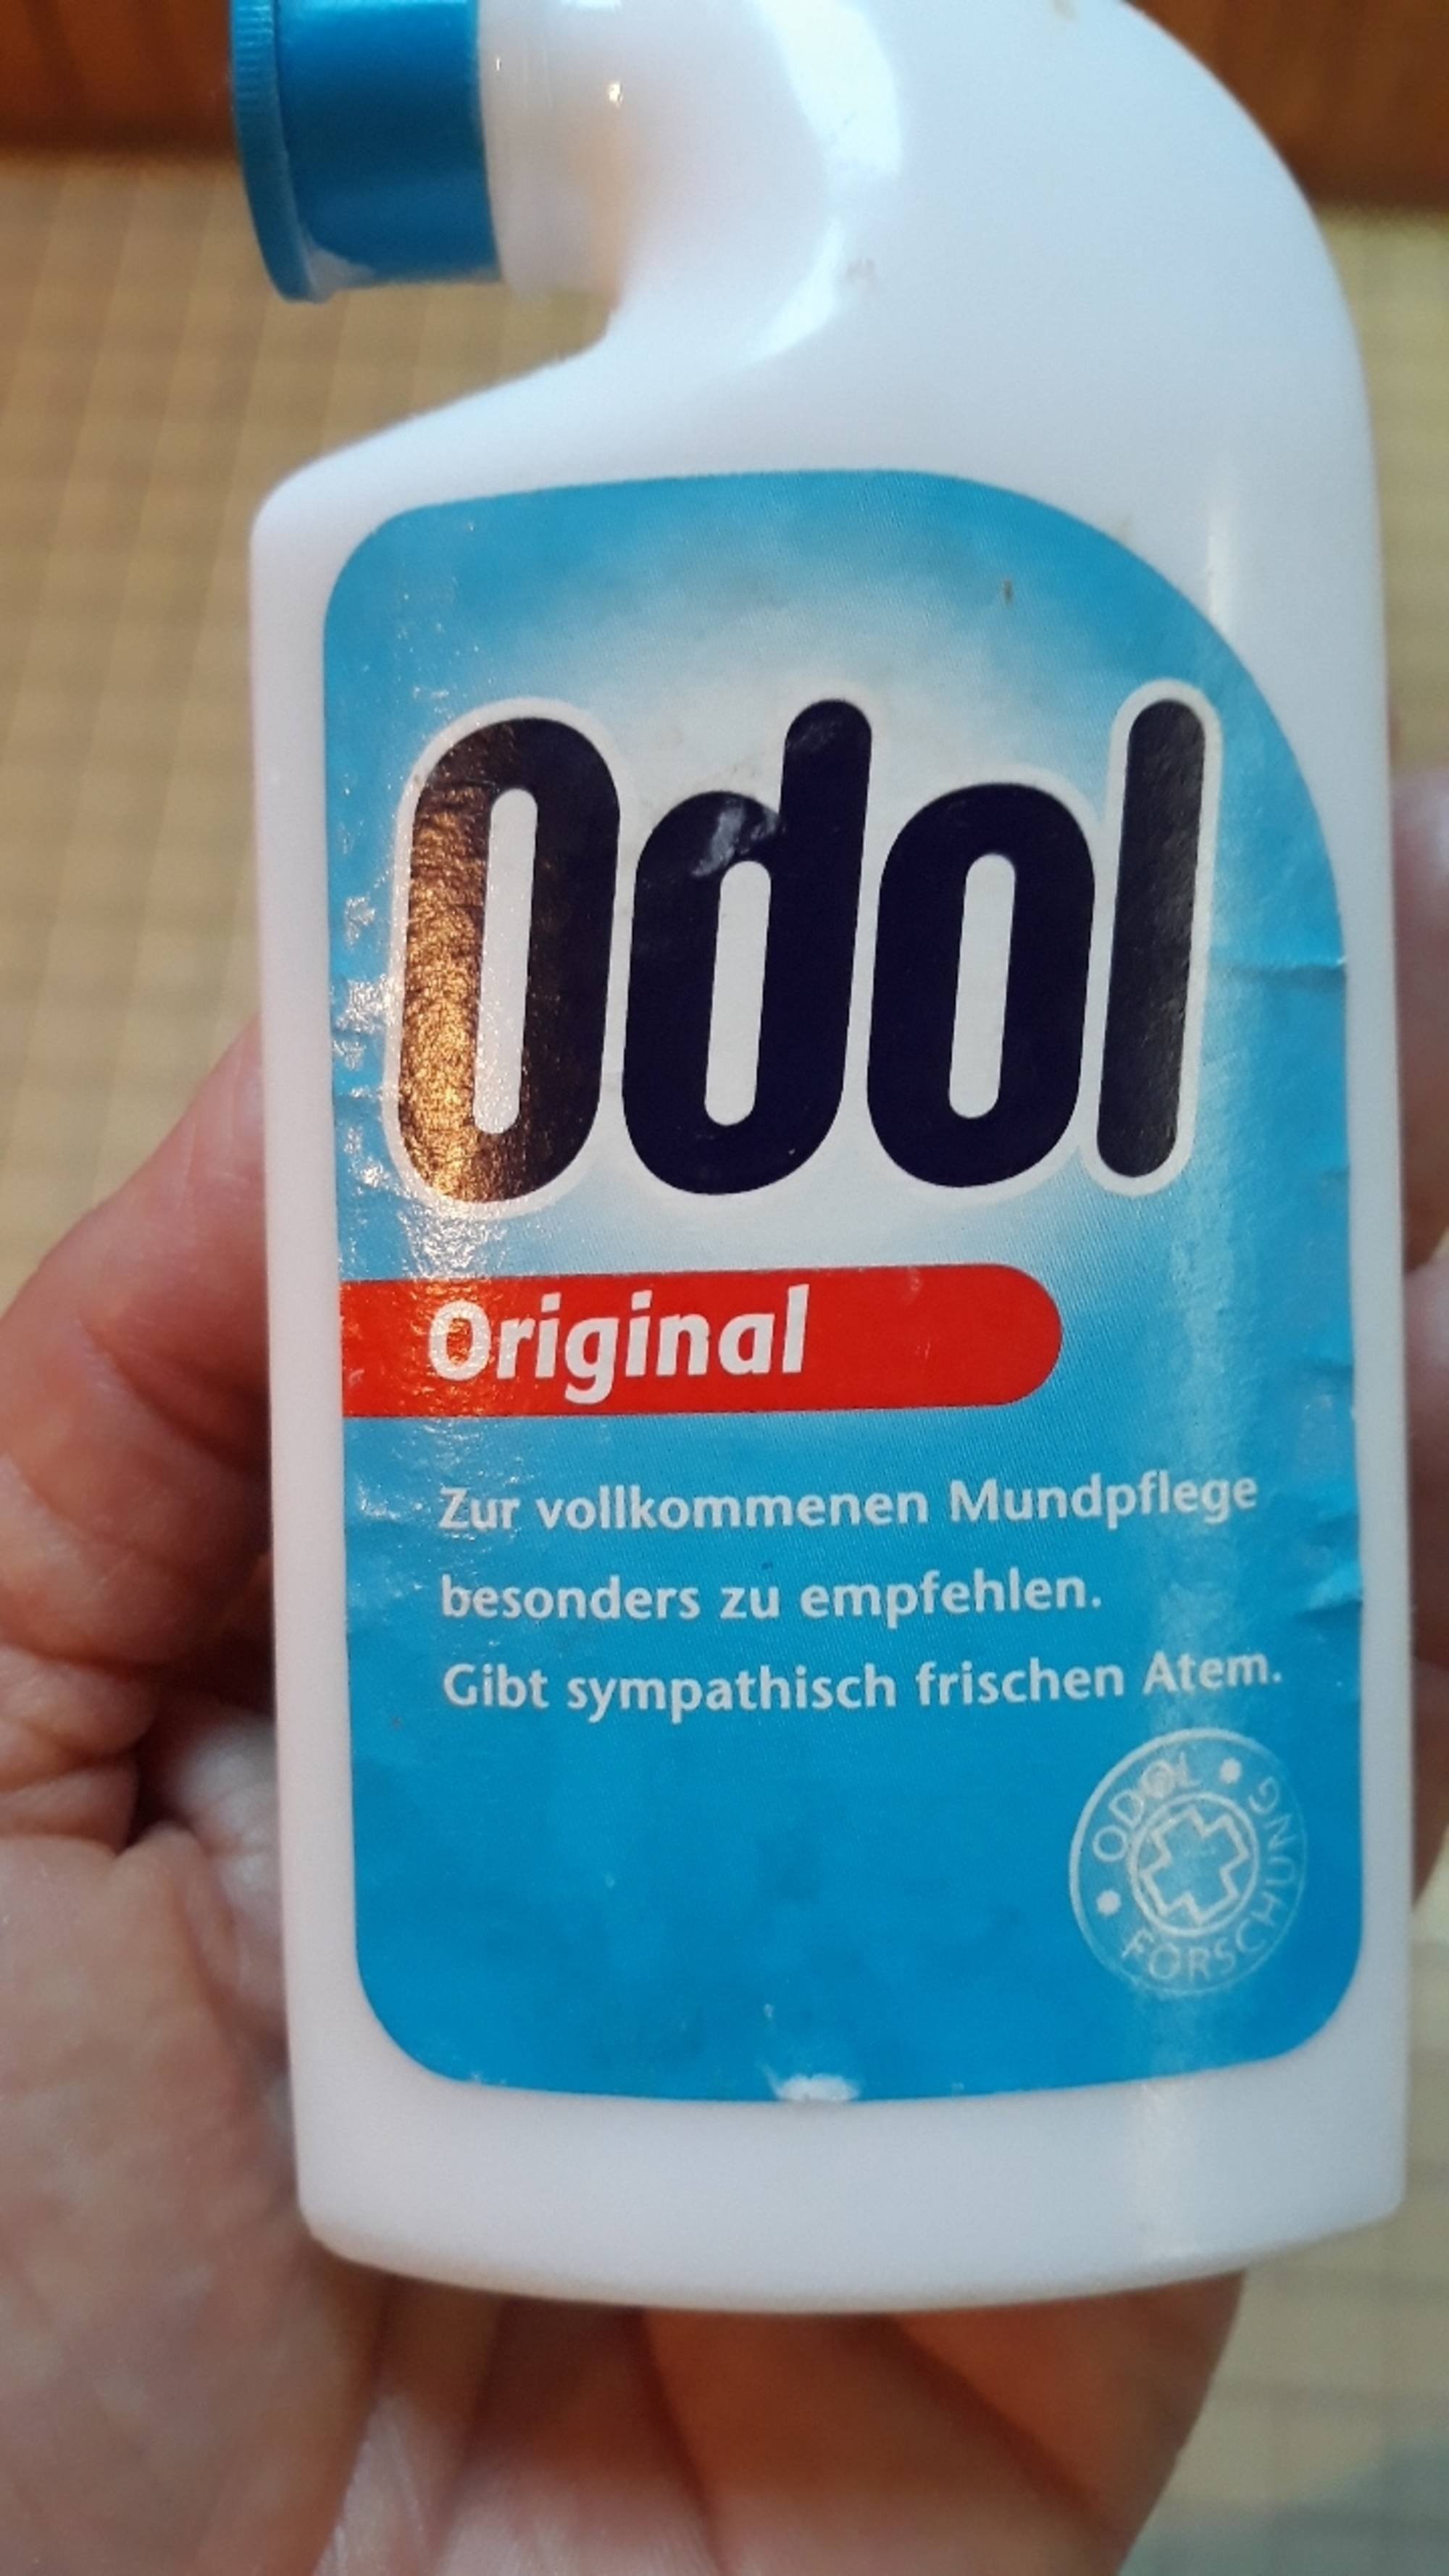 ODOL - Original - Zur vollkommenen mundpflege